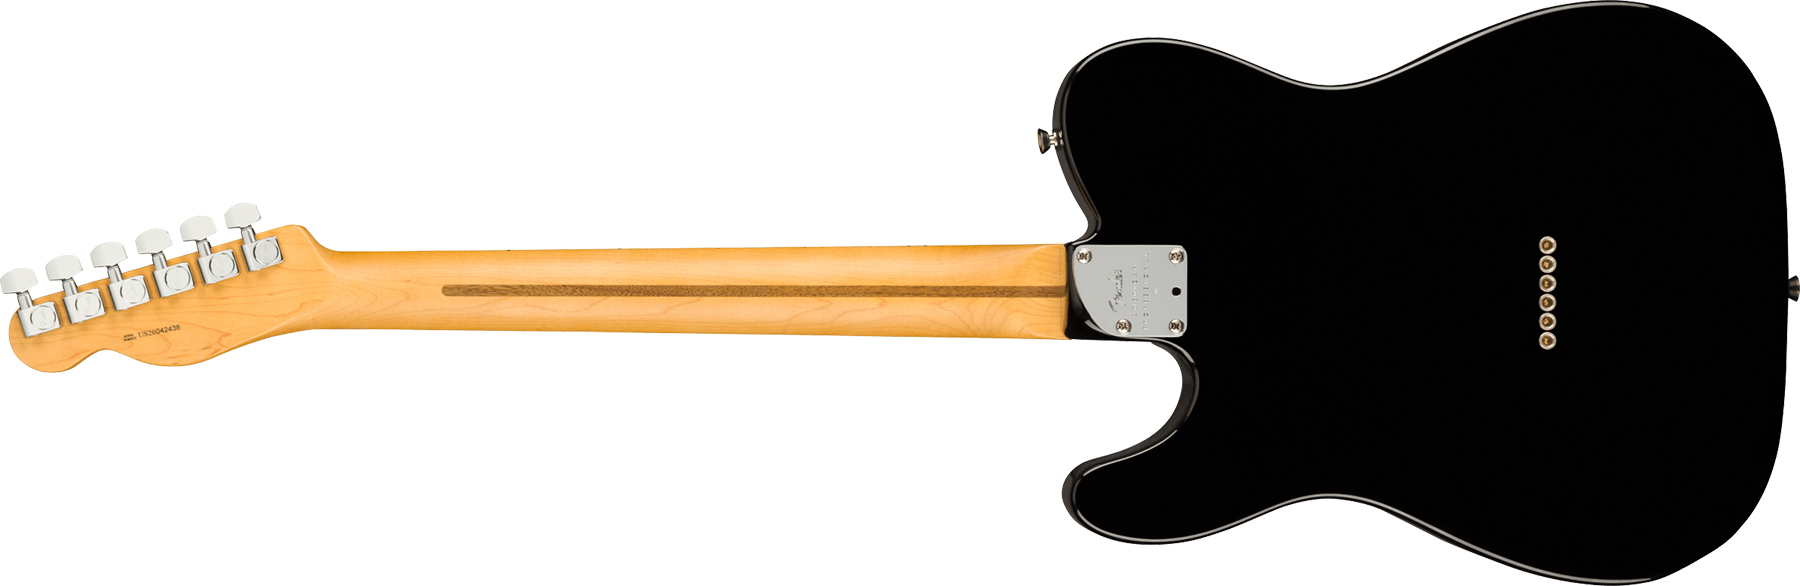 Fender Tele American Professional Ii Usa Mn - Black - Guitarra eléctrica con forma de tel - Variation 1